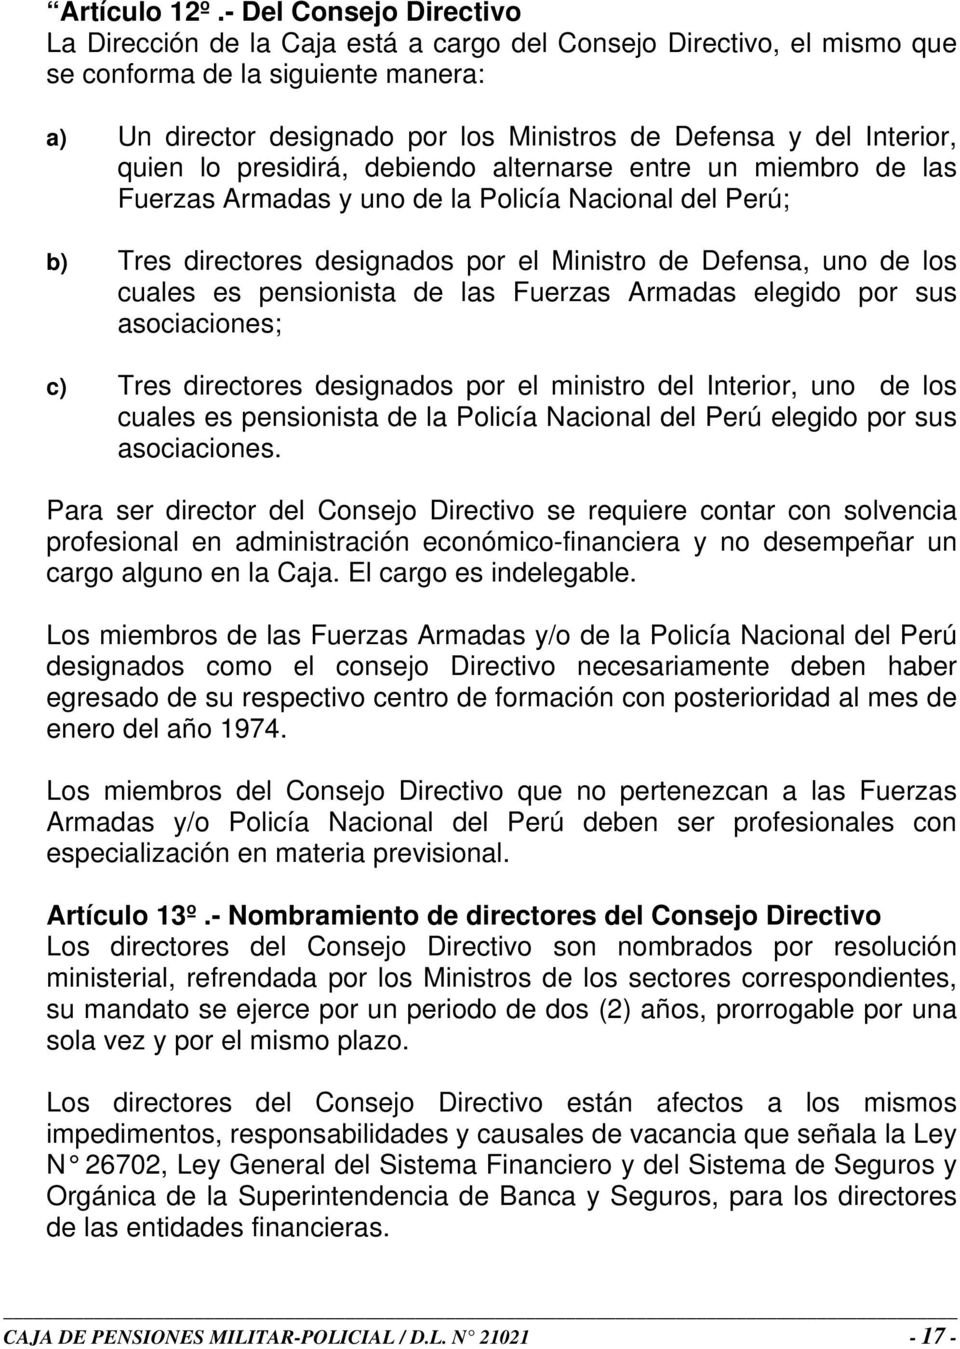 Interior, quien lo presidirá, debiendo alternarse entre un miembro de las Fuerzas Armadas y uno de la Policía Nacional del Perú; b) Tres directores designados por el Ministro de Defensa, uno de los